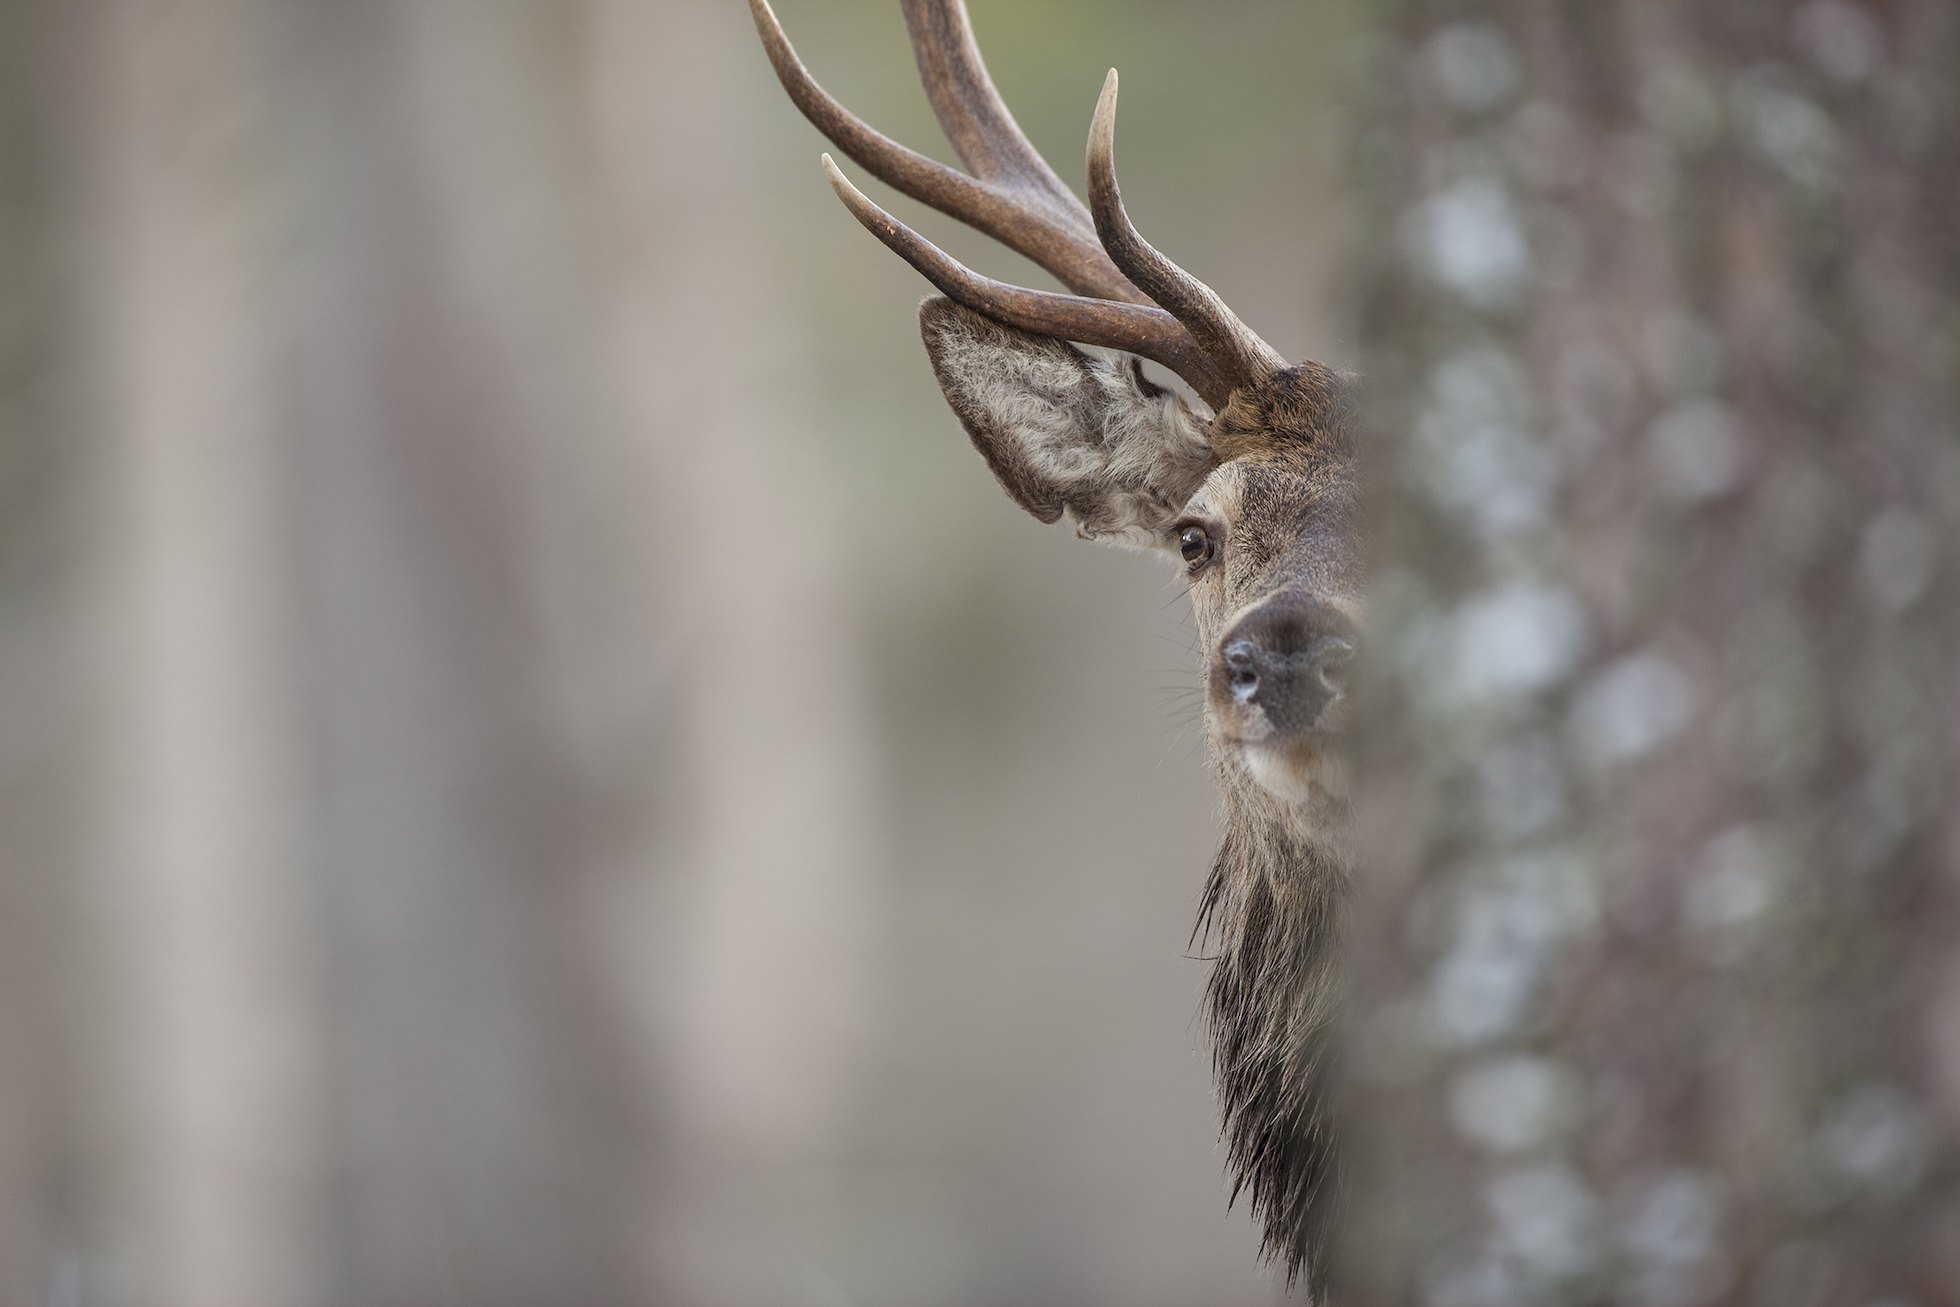 Red deer (Cervus elaphus) stag in winter pine forest, Cairngorms NP, Scotland.